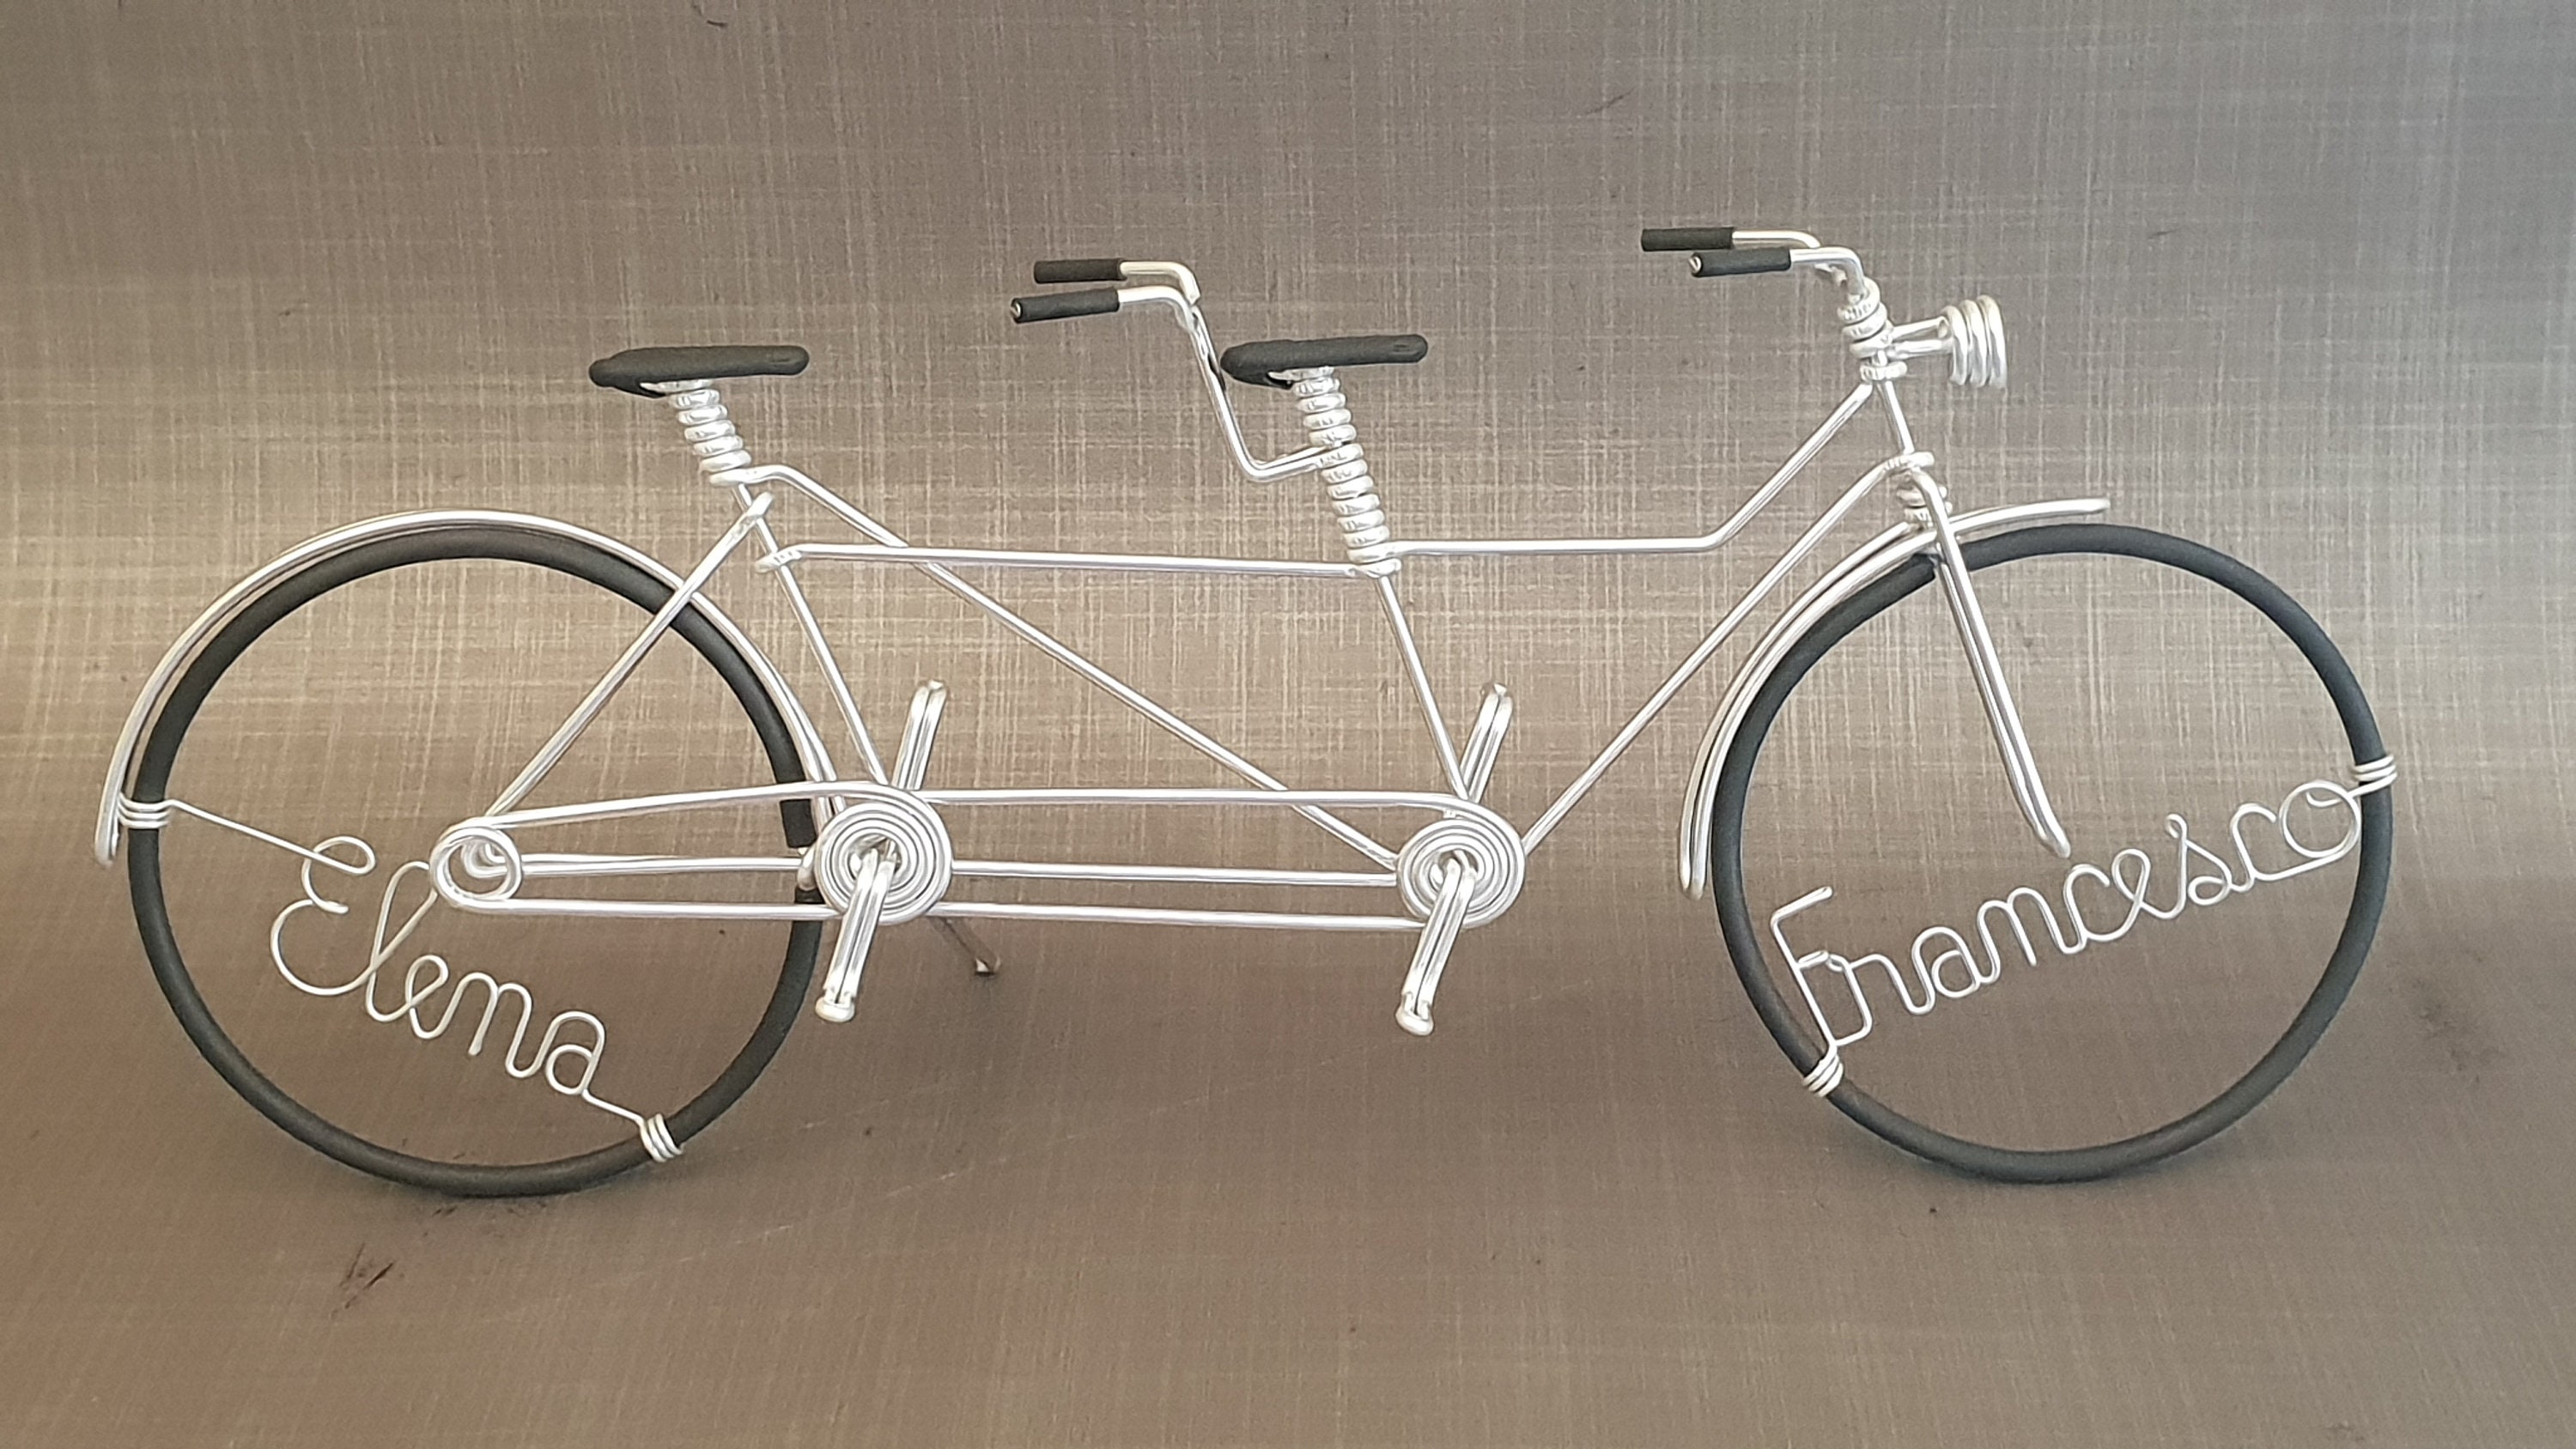 Bicicleta tándem de carreras en miniatura con cable de aluminio / Racing  Tandem -  España